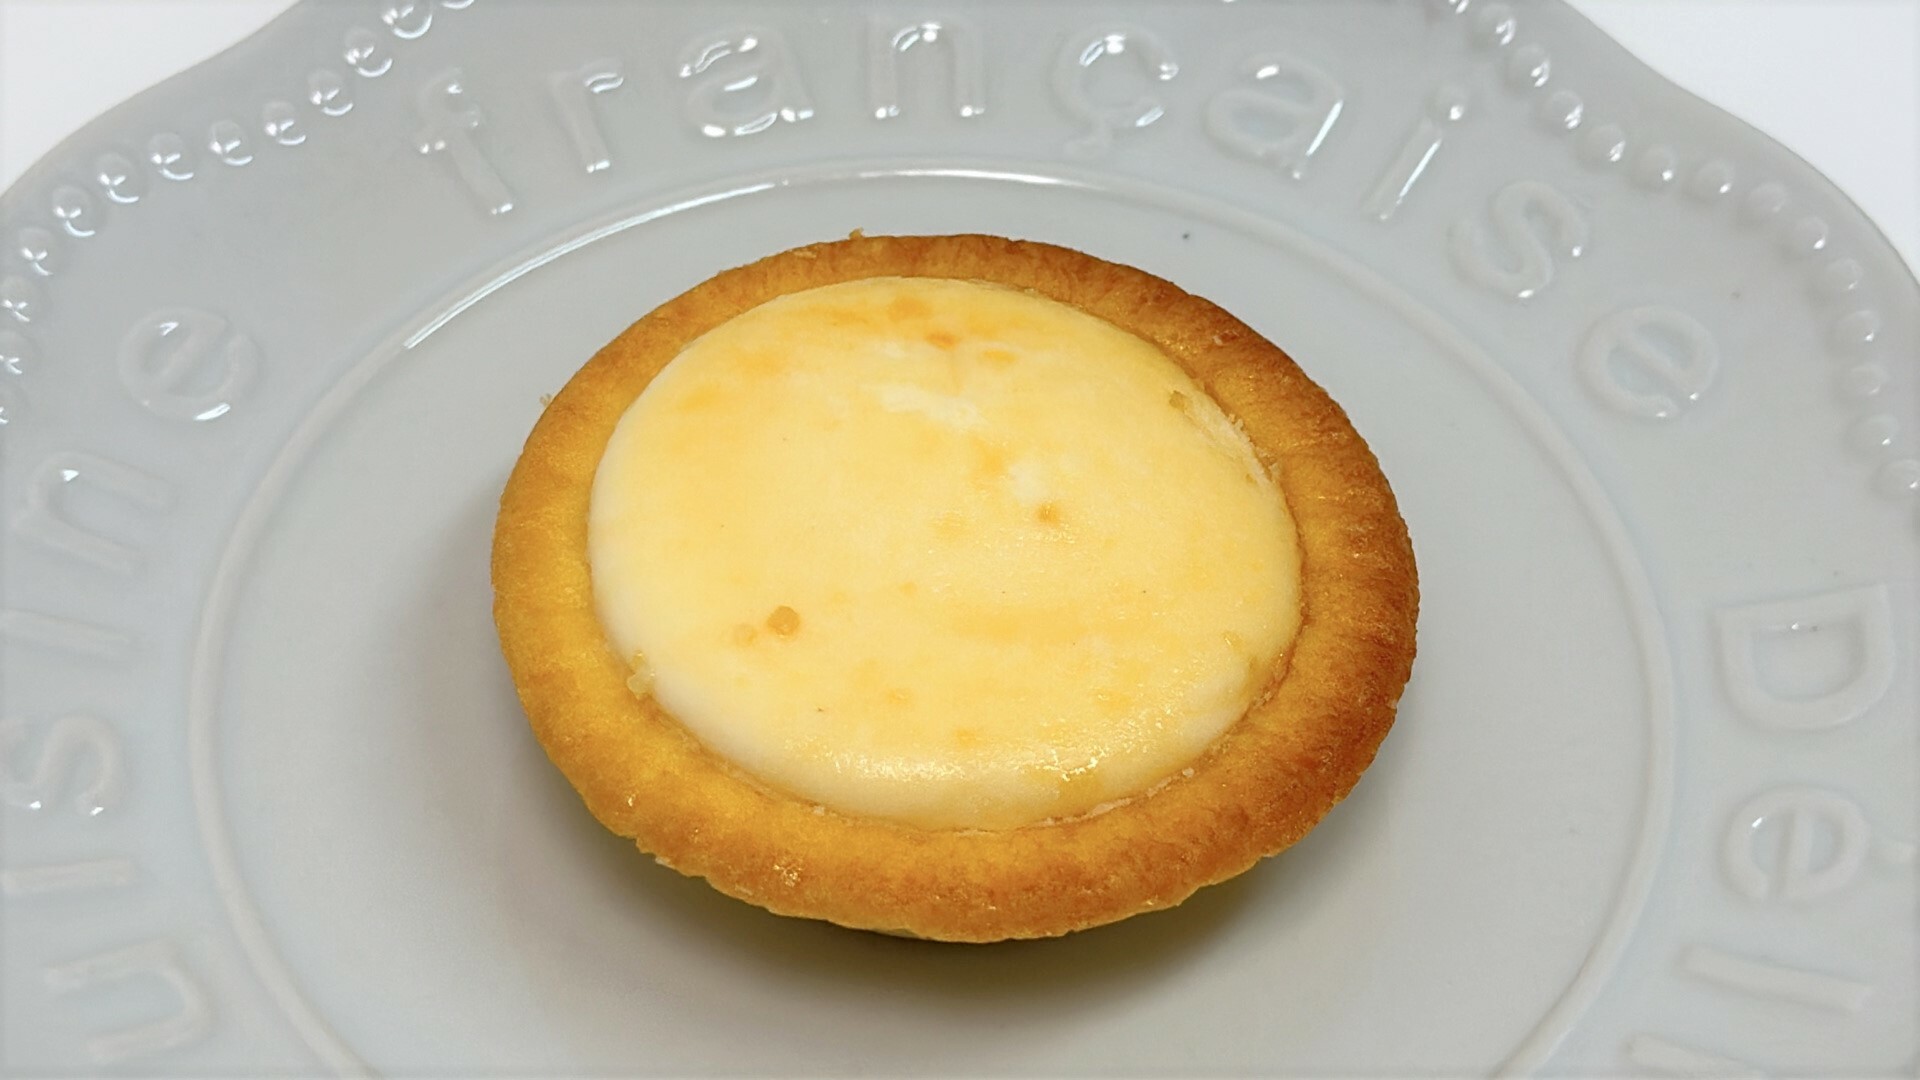 素朴な雰囲気のファミマ新作、バター香る焼きチーズタルト